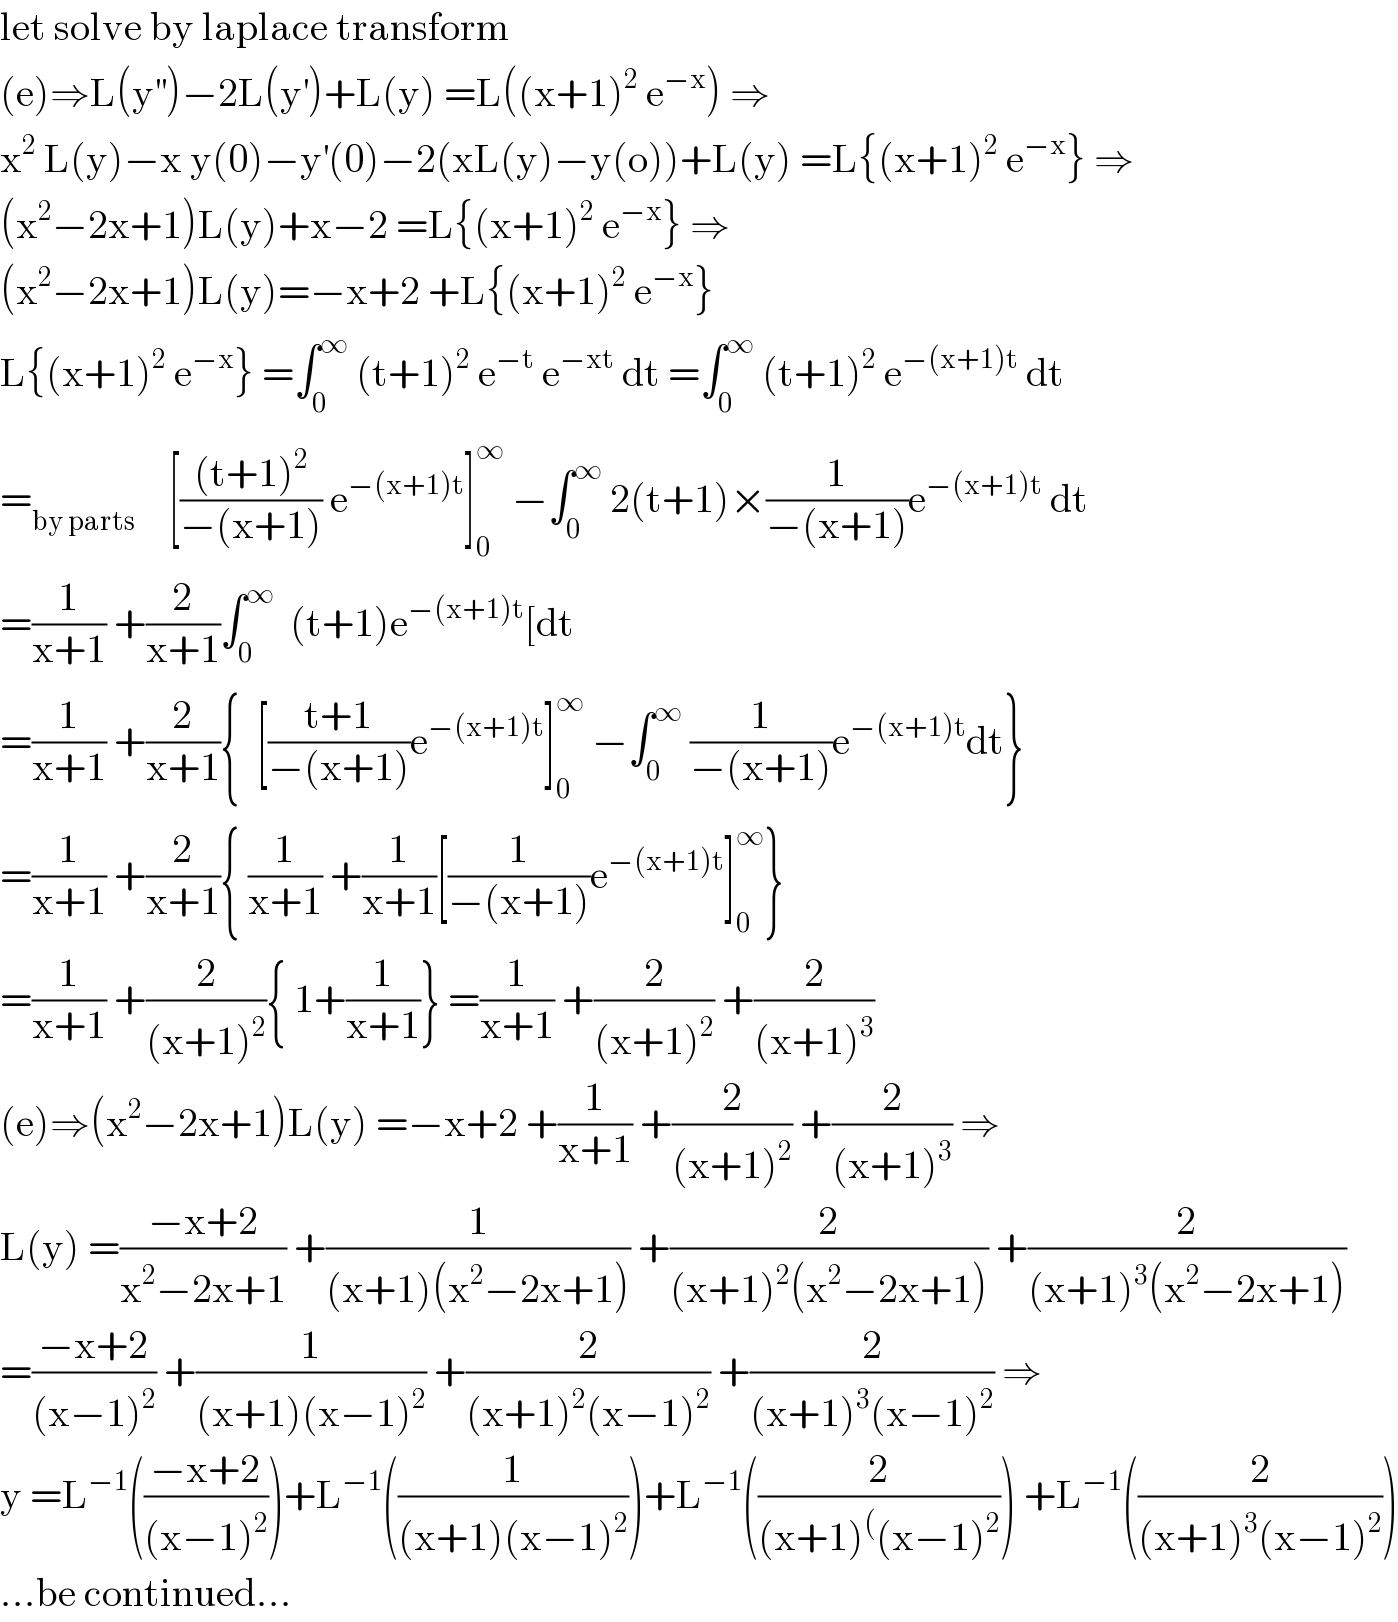 let solve by laplace transform   (e)⇒L(y^(′′) )−2L(y^′ )+L(y) =L((x+1)^2  e^(−x) ) ⇒  x^2  L(y)−x y(0)−y^′ (0)−2(xL(y)−y(o))+L(y) =L{(x+1)^2  e^(−x) } ⇒  (x^2 −2x+1)L(y)+x−2 =L{(x+1)^2  e^(−x) } ⇒  (x^2 −2x+1)L(y)=−x+2 +L{(x+1)^2  e^(−x) }  L{(x+1)^2  e^(−x) } =∫_0 ^∞  (t+1)^2  e^(−t)  e^(−xt)  dt =∫_0 ^∞  (t+1)^2  e^(−(x+1)t)  dt  =_(by parts)     [(((t+1)^2 )/(−(x+1))) e^(−(x+1)t) ]_0 ^∞  −∫_0 ^∞  2(t+1)×(1/(−(x+1)))e^(−(x+1)t)  dt  =(1/(x+1)) +(2/(x+1))∫_0 ^∞   (t+1)e^(−(x+1)t) [dt  =(1/(x+1)) +(2/(x+1)){  [((t+1)/(−(x+1)))e^(−(x+1)t) ]_0 ^∞  −∫_0 ^∞  (1/(−(x+1)))e^(−(x+1)t) dt}  =(1/(x+1)) +(2/(x+1)){ (1/(x+1)) +(1/(x+1))[(1/(−(x+1)))e^(−(x+1)t) ]_0 ^∞ }  =(1/(x+1)) +(2/((x+1)^2 )){ 1+(1/(x+1))} =(1/(x+1)) +(2/((x+1)^2 )) +(2/((x+1)^3 ))  (e)⇒(x^2 −2x+1)L(y) =−x+2 +(1/(x+1)) +(2/((x+1)^2 )) +(2/((x+1)^3 )) ⇒  L(y) =((−x+2)/(x^2 −2x+1)) +(1/((x+1)(x^2 −2x+1))) +(2/((x+1)^2 (x^2 −2x+1))) +(2/((x+1)^3 (x^2 −2x+1)))  =((−x+2)/((x−1)^2 )) +(1/((x+1)(x−1)^2 )) +(2/((x+1)^2 (x−1)^2 )) +(2/((x+1)^3 (x−1)^2 )) ⇒  y =L^(−1) (((−x+2)/((x−1)^2 )))+L^(−1) ((1/((x+1)(x−1)^2 )))+L^(−1) ((2/((x+1)^( (x−1)^2 ))) +L^(−1) ((2/((x+1)^3 (x−1)^2 )))  ...be continued...  